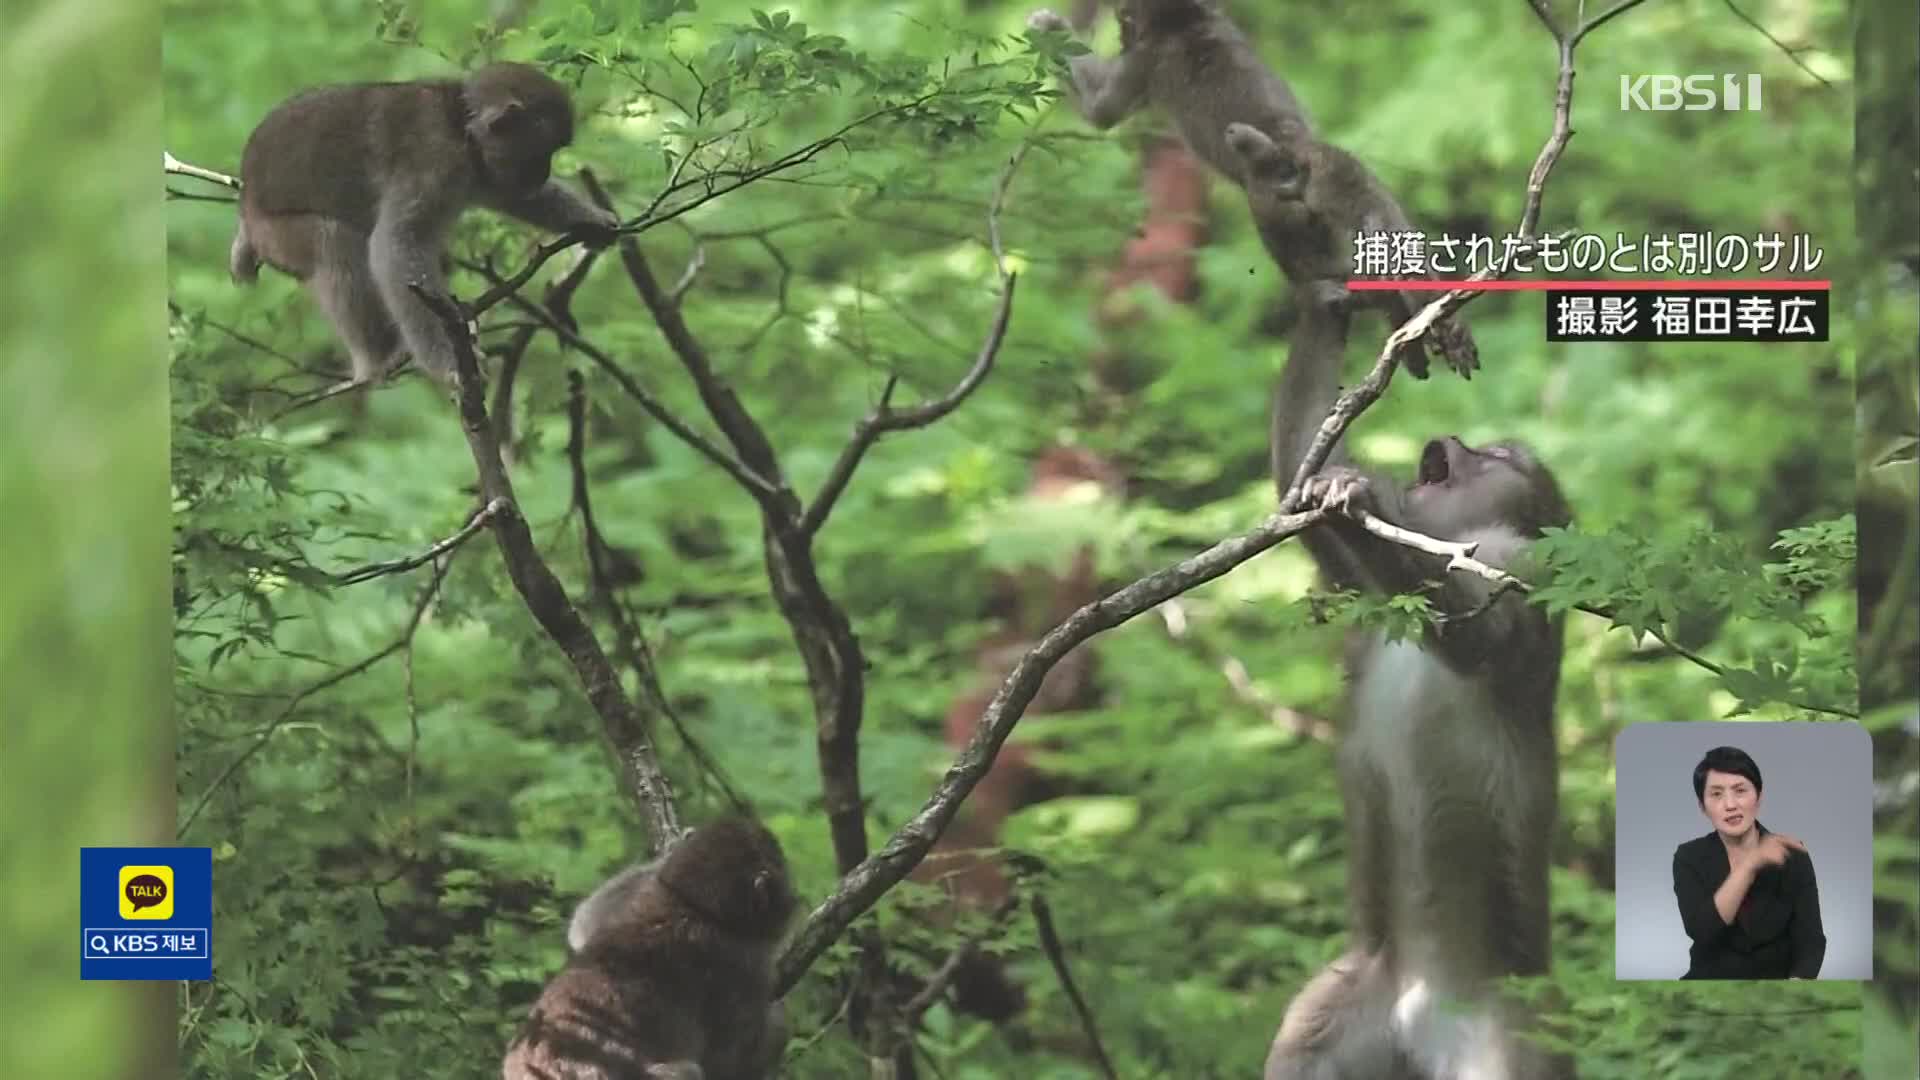 일본, 돌고래와 원숭이 습격 피해 잇따라